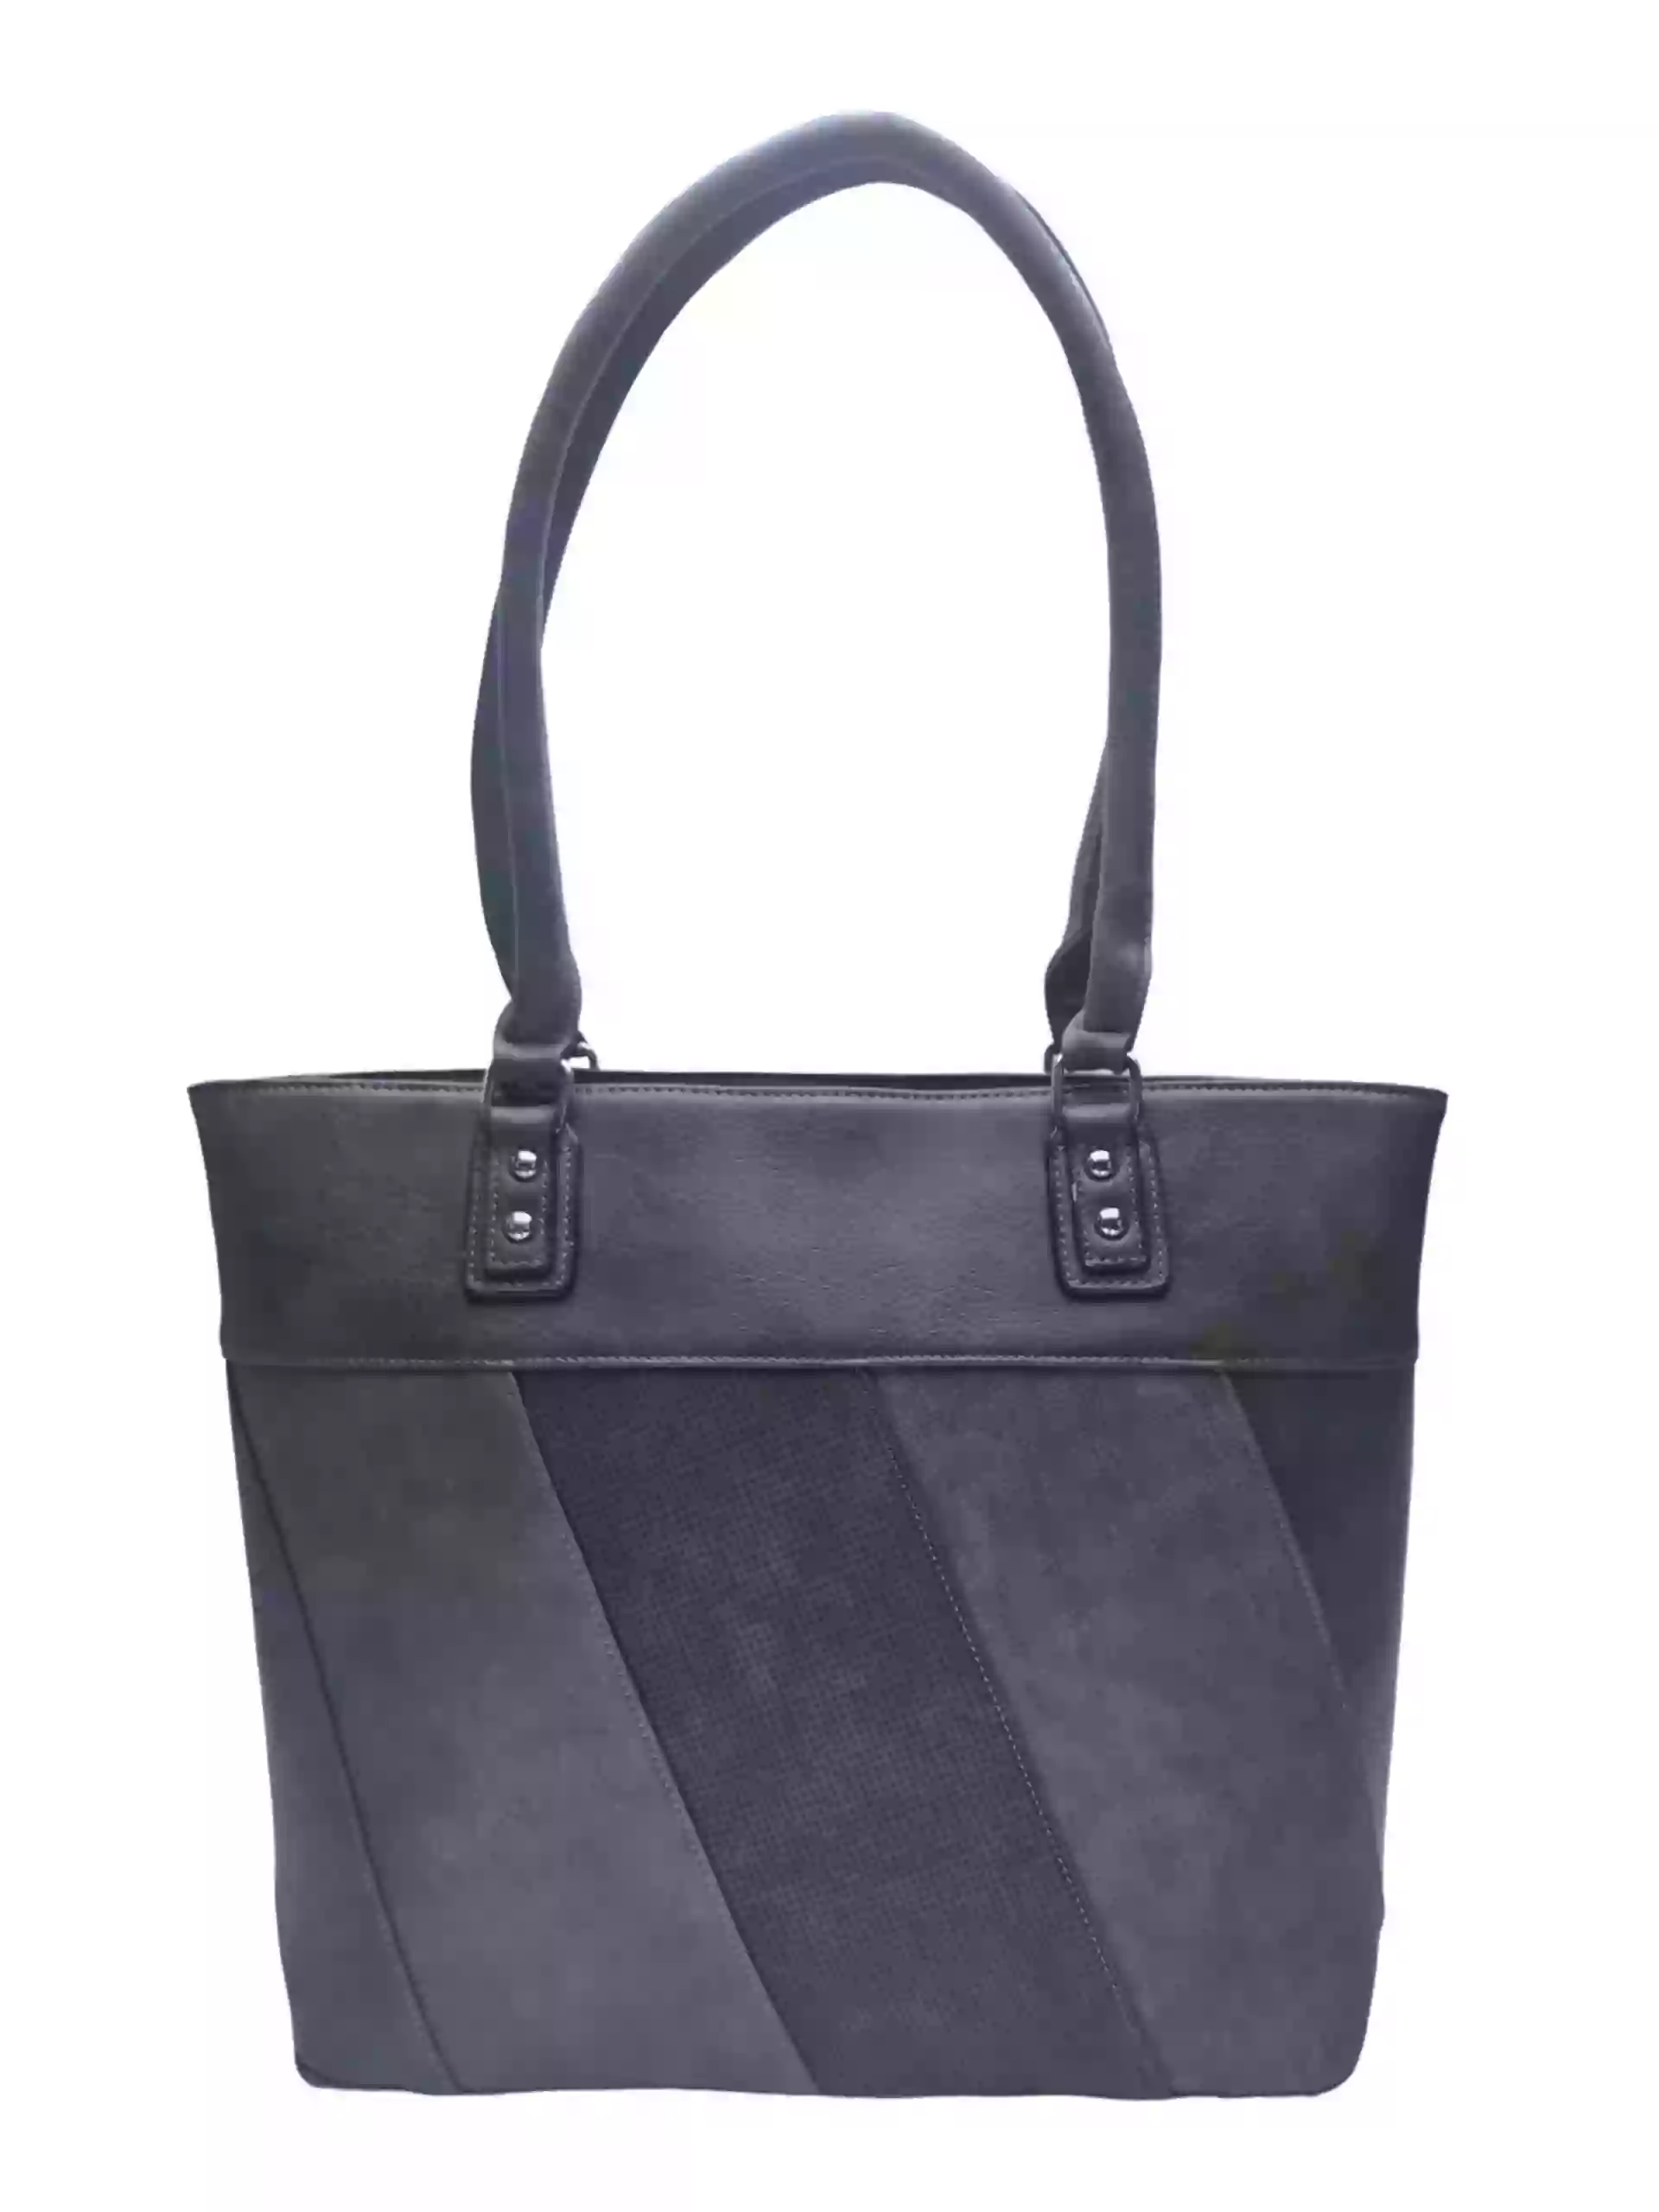 Dámská kabelka přes rameno s moderními vzory, Tapple H190027, tmavě šedá, přední strana kabelky